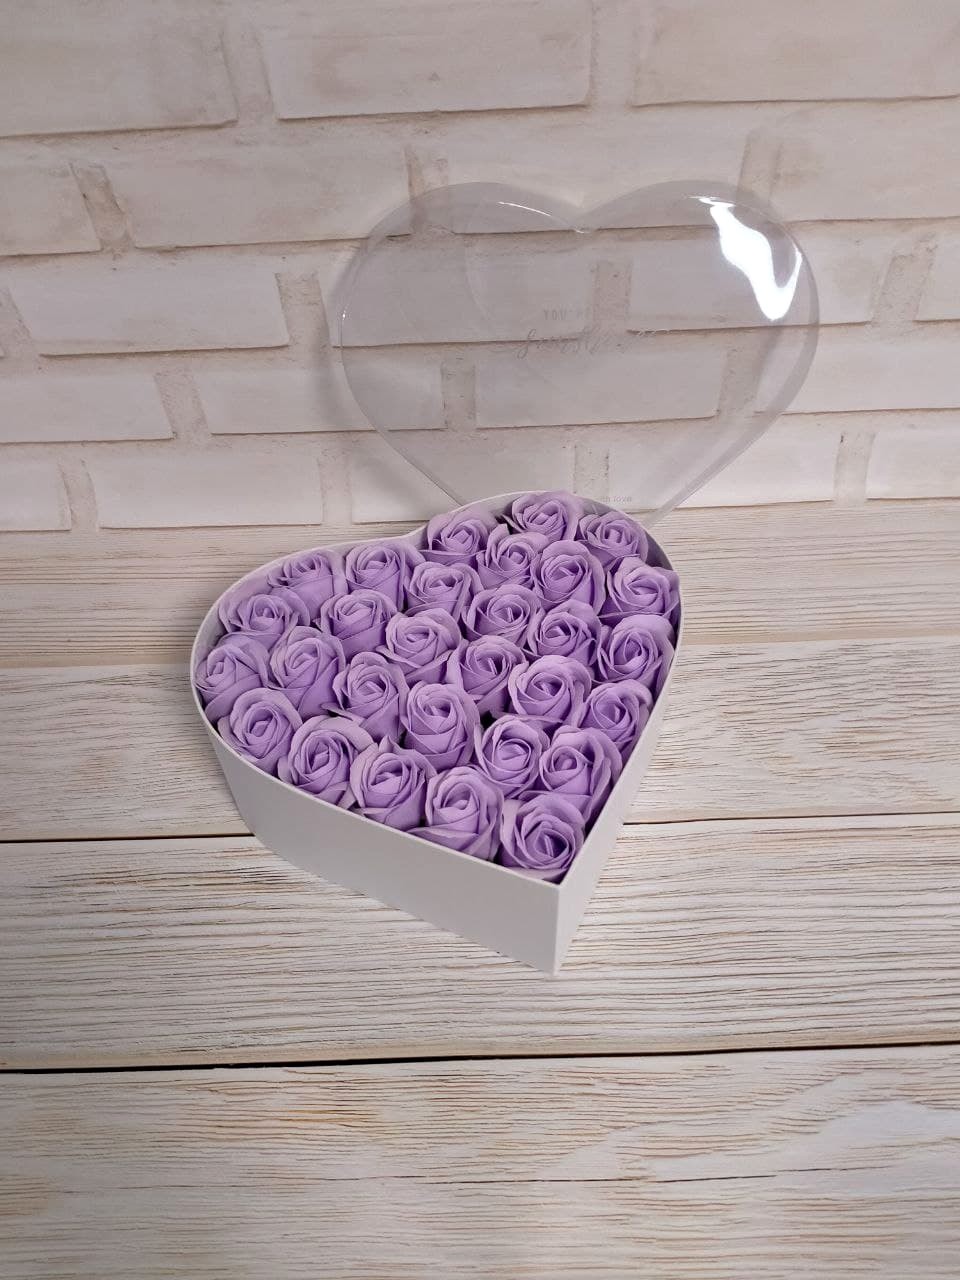 Подарочная коробка с мыльными розами, 29 мыльных лавандовых роз, коробка в виде сердца